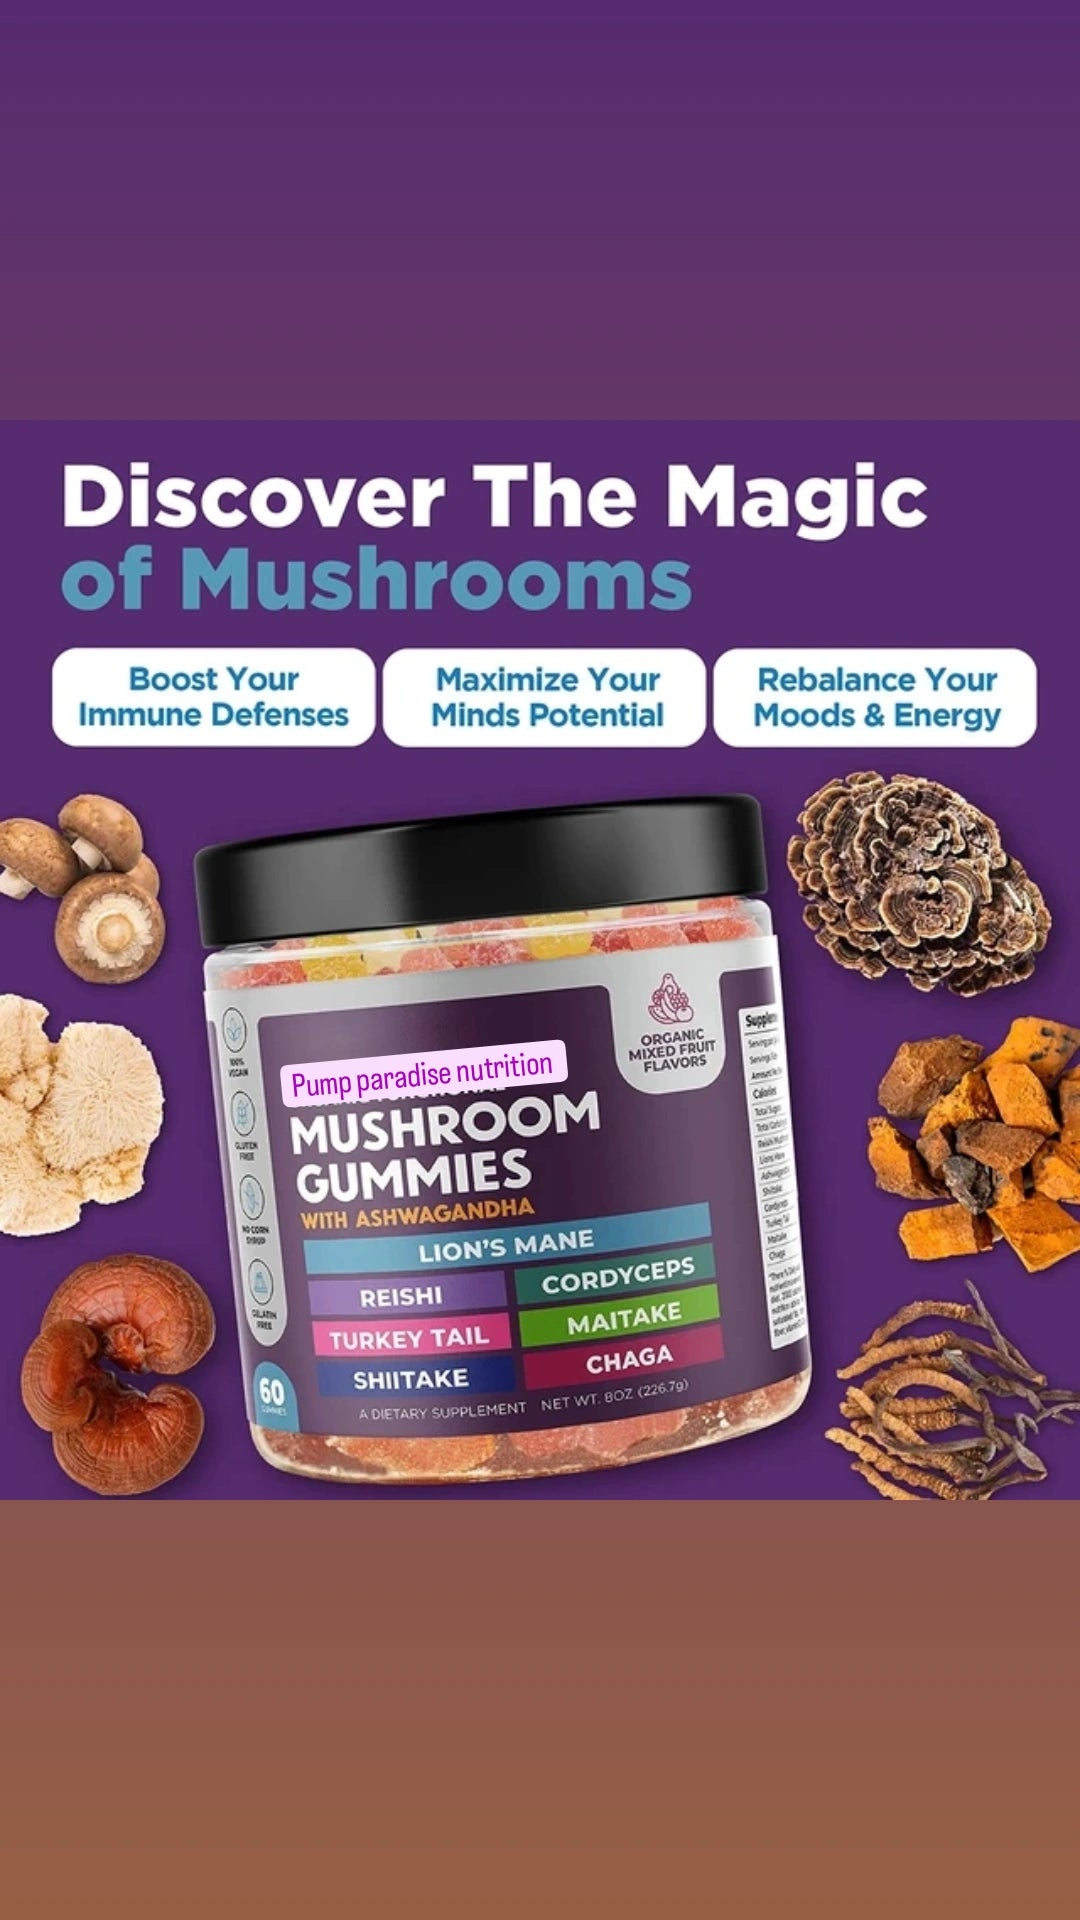 Mushroom gummies